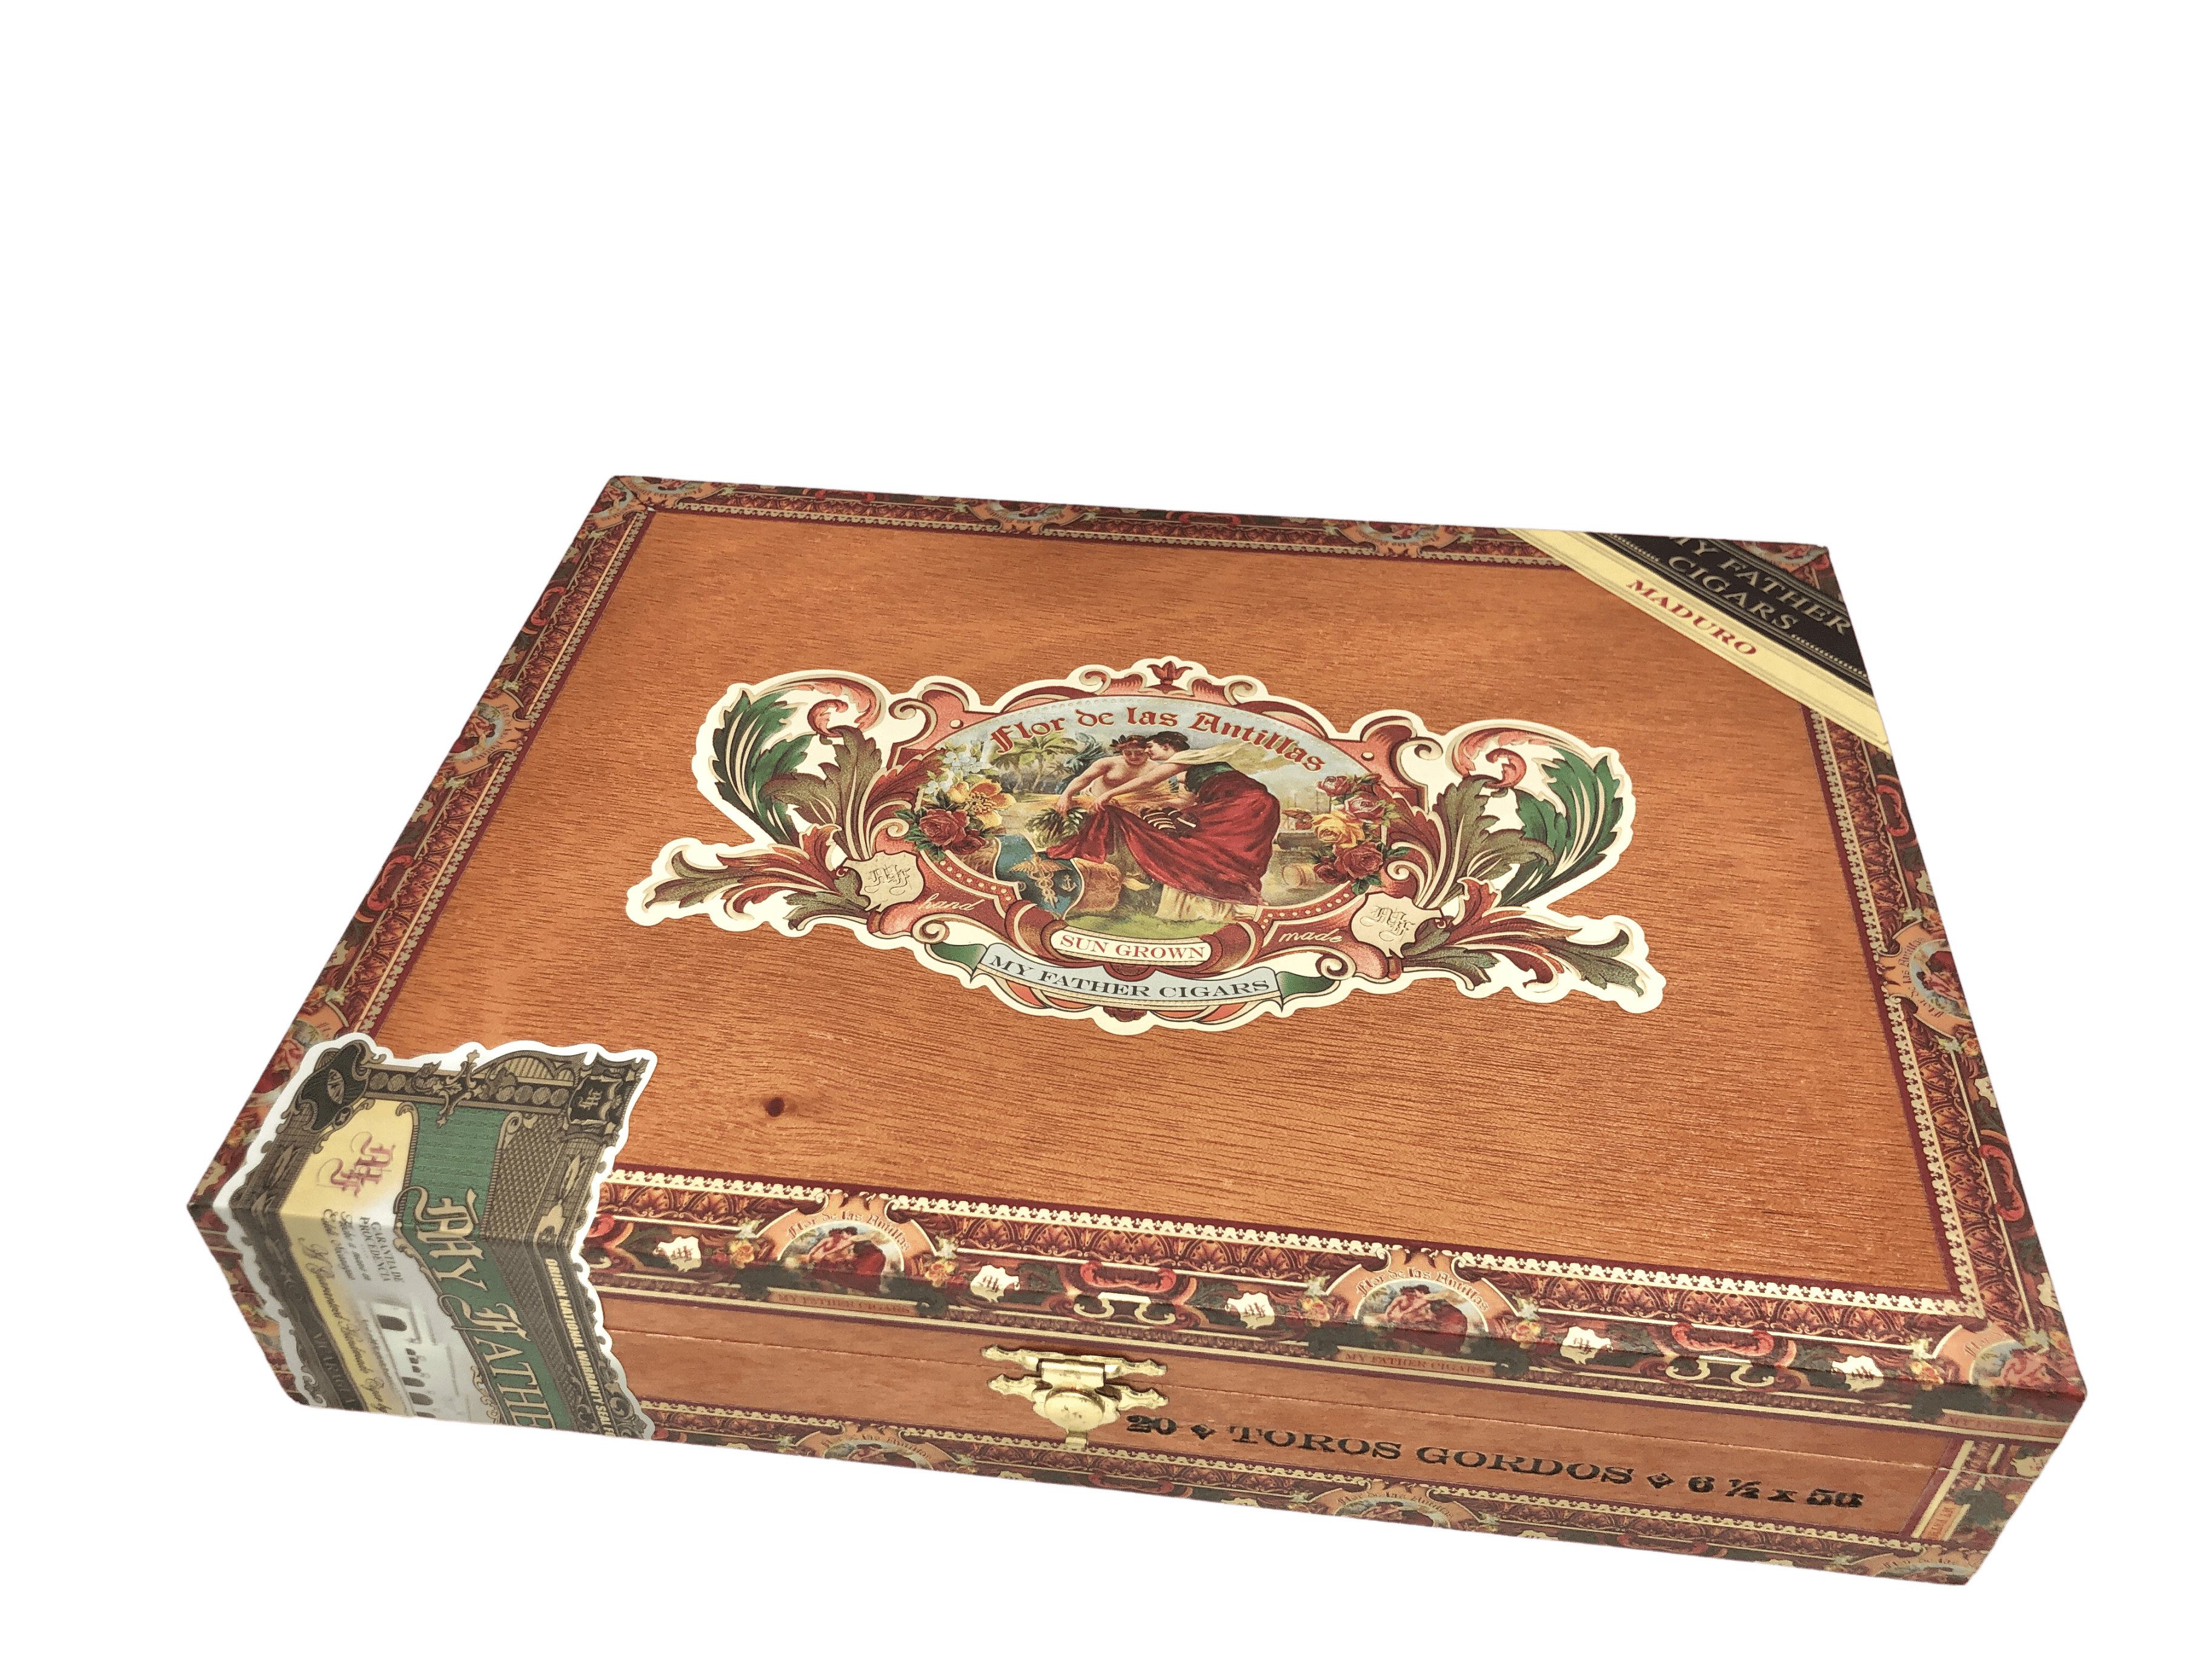 Genuine Leather Box Tobacco Pouch - Brown - W. Curtis Draper